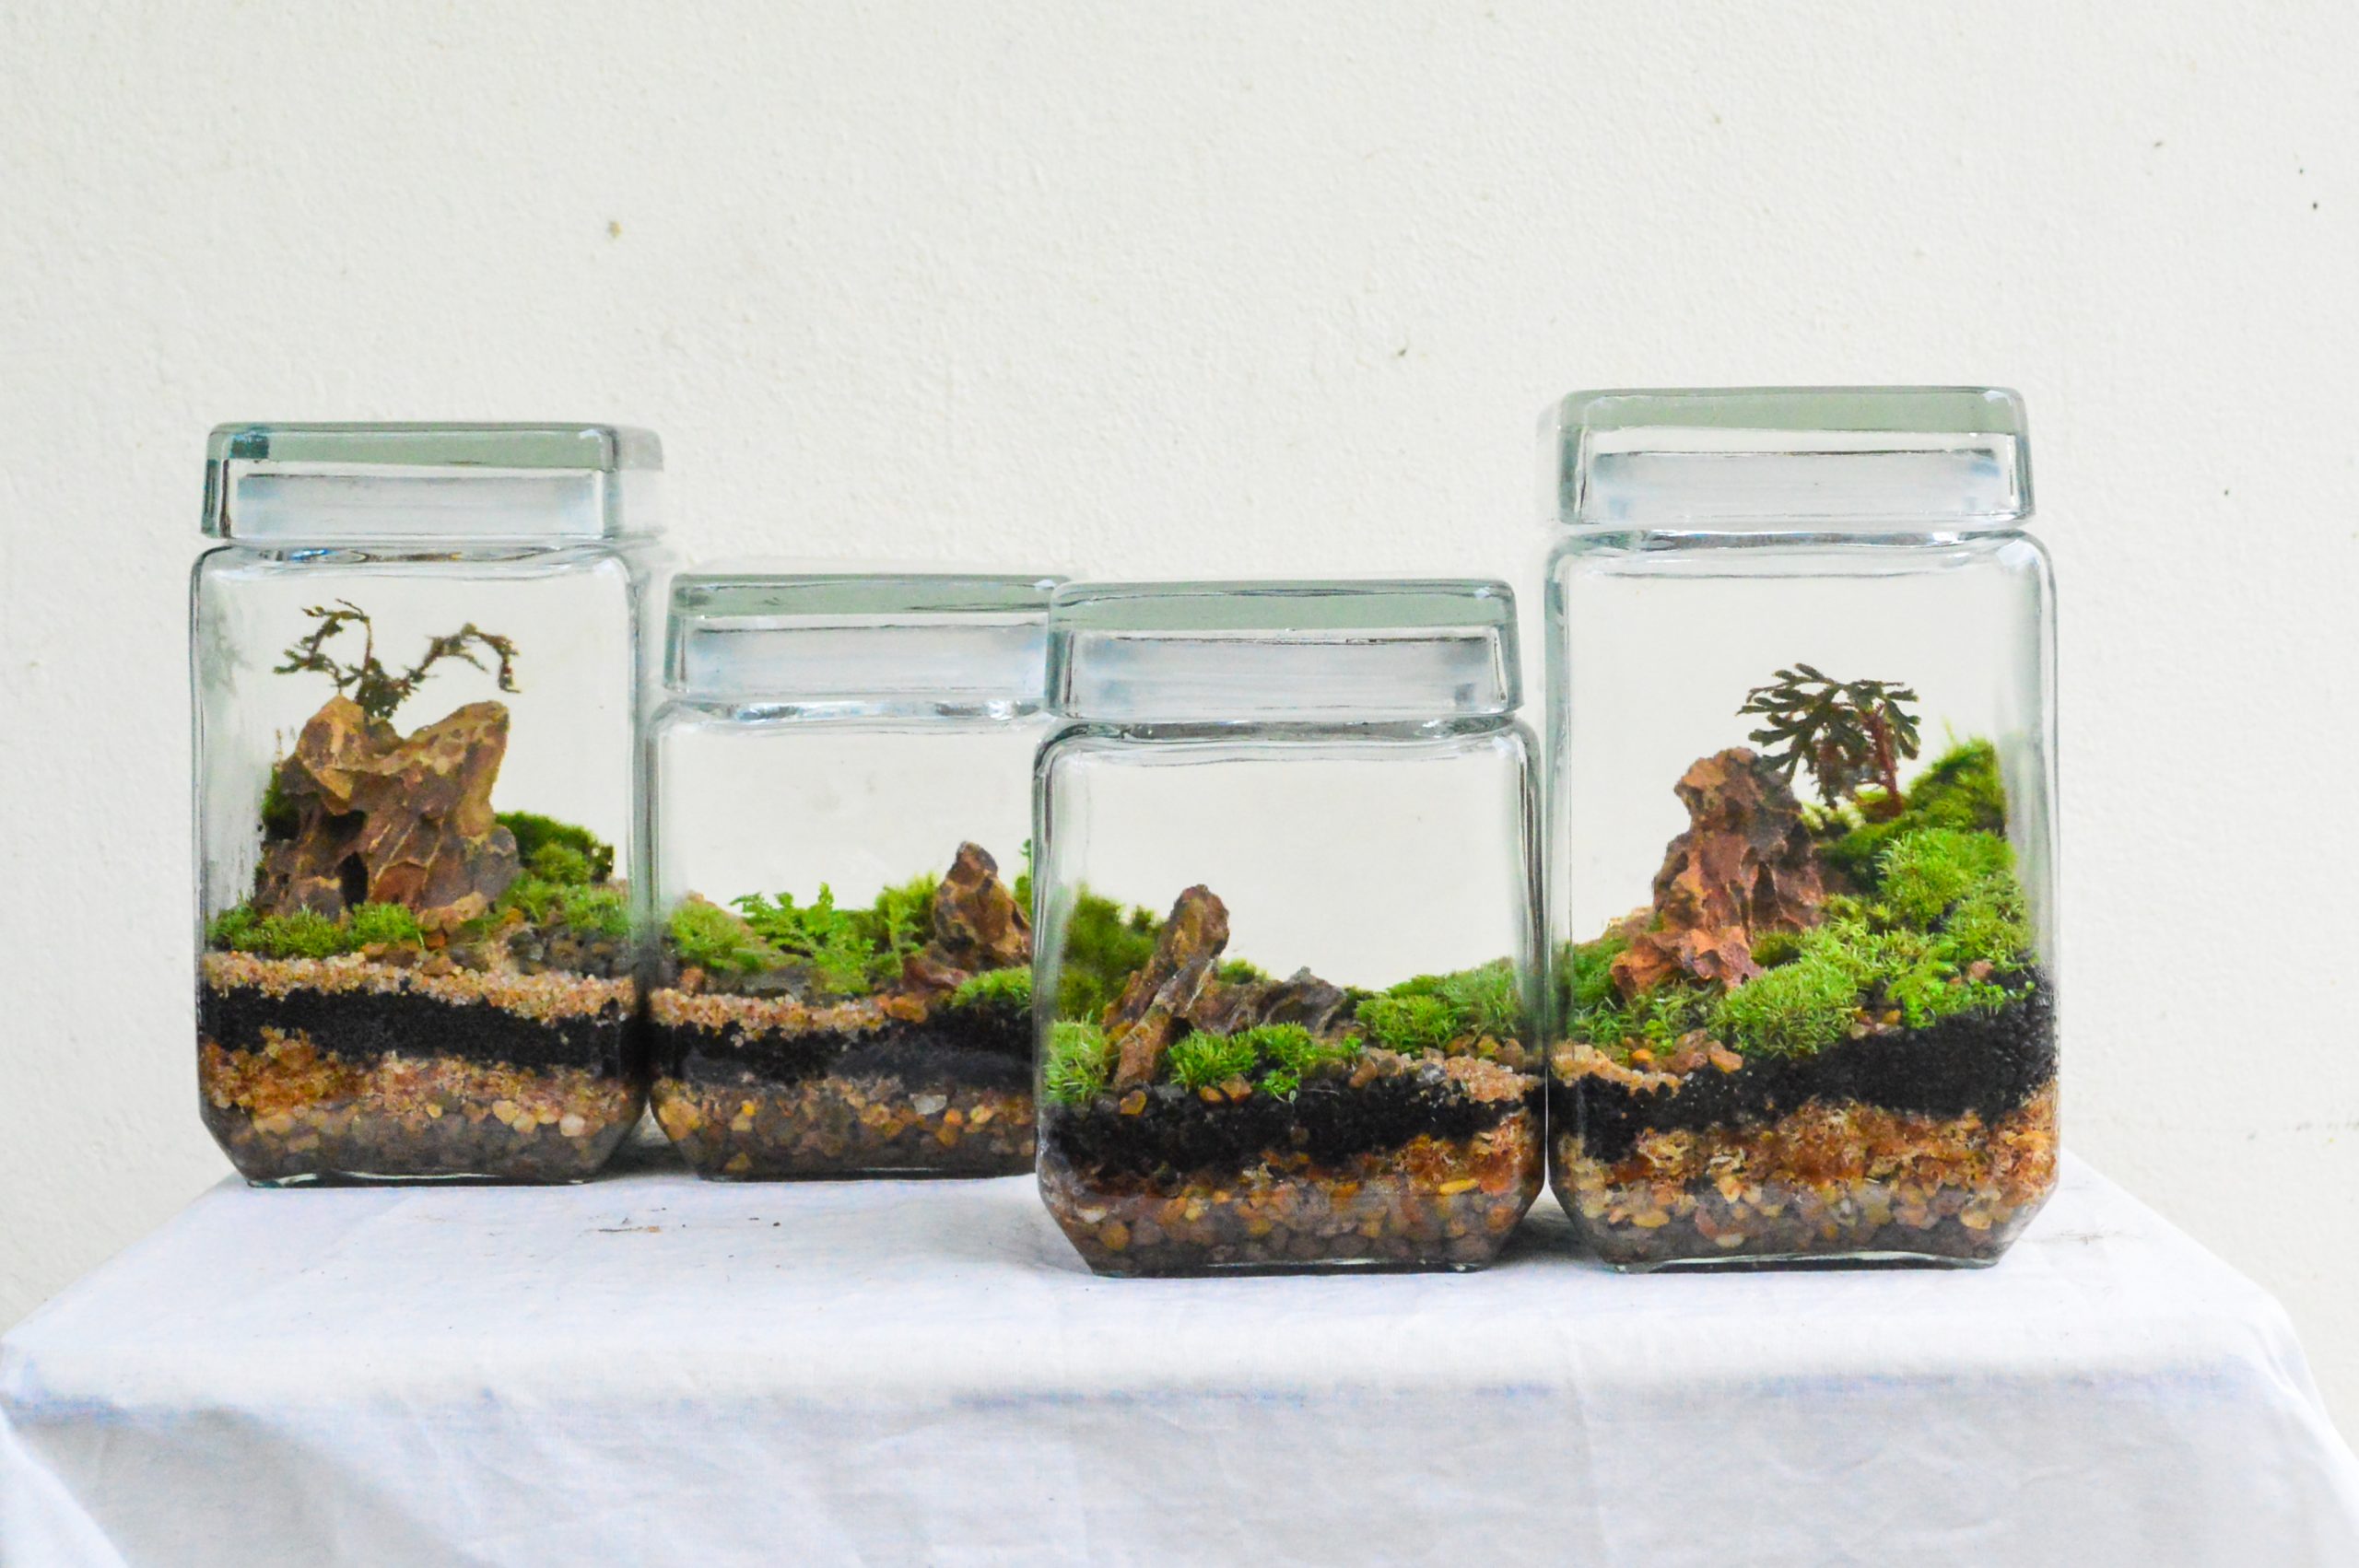 4 glass terrariums using moss